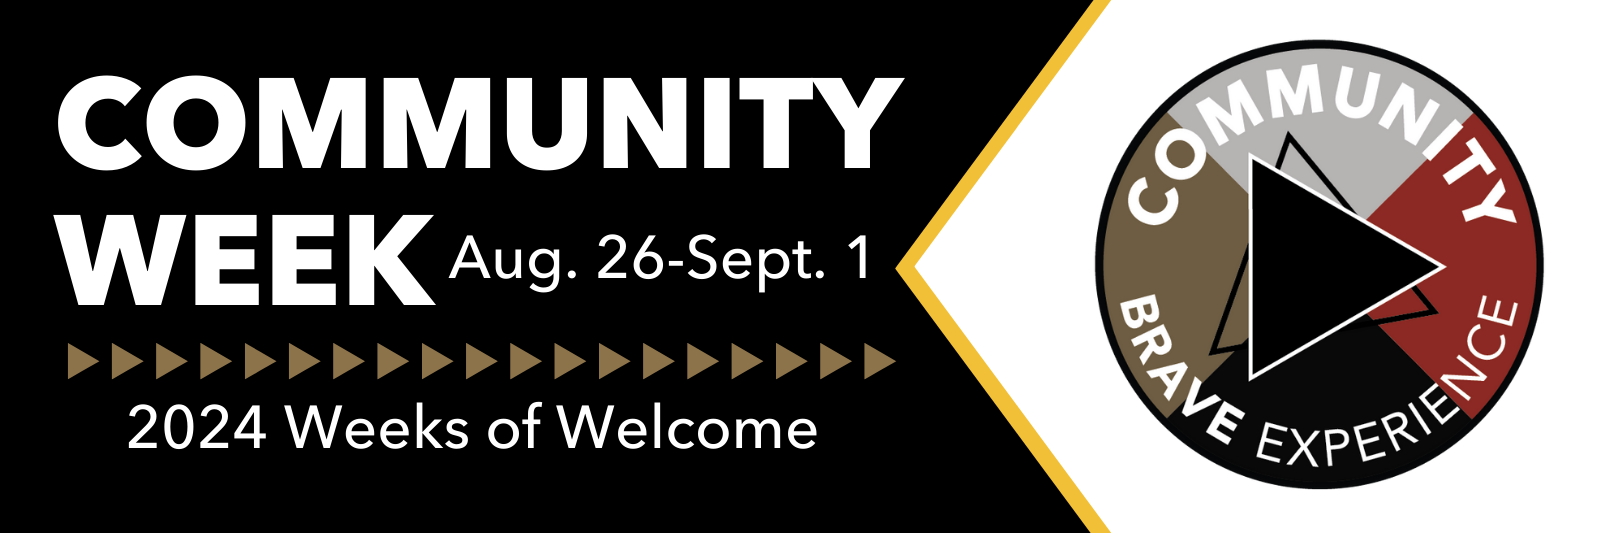 Community Week: August 26-September 1